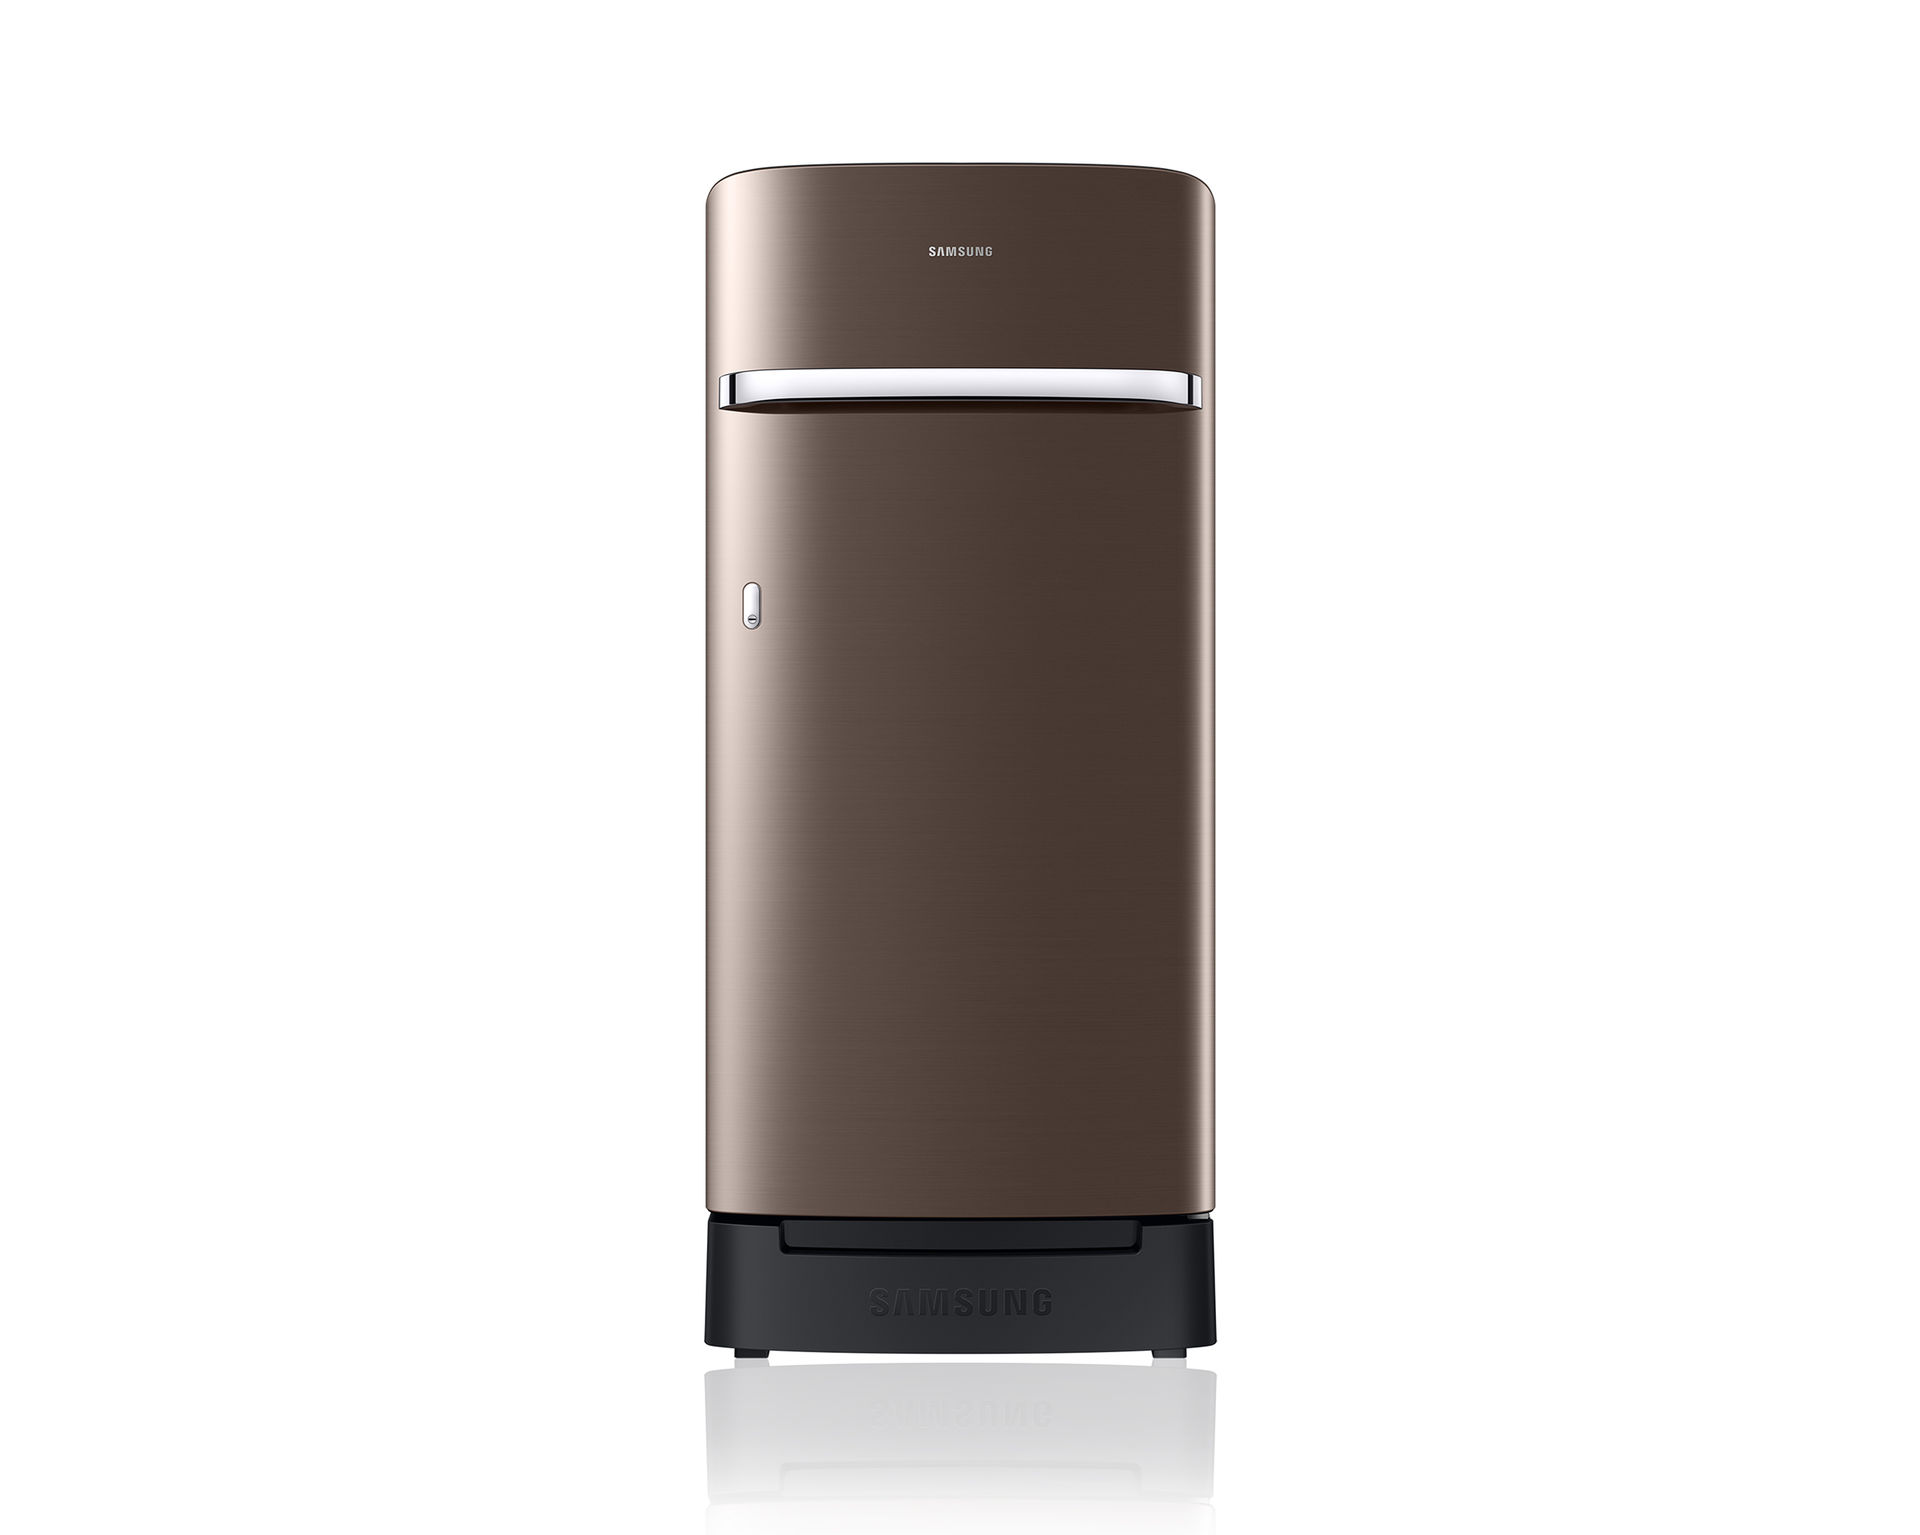 Samsung Horizontal Curve Design Refrigerator